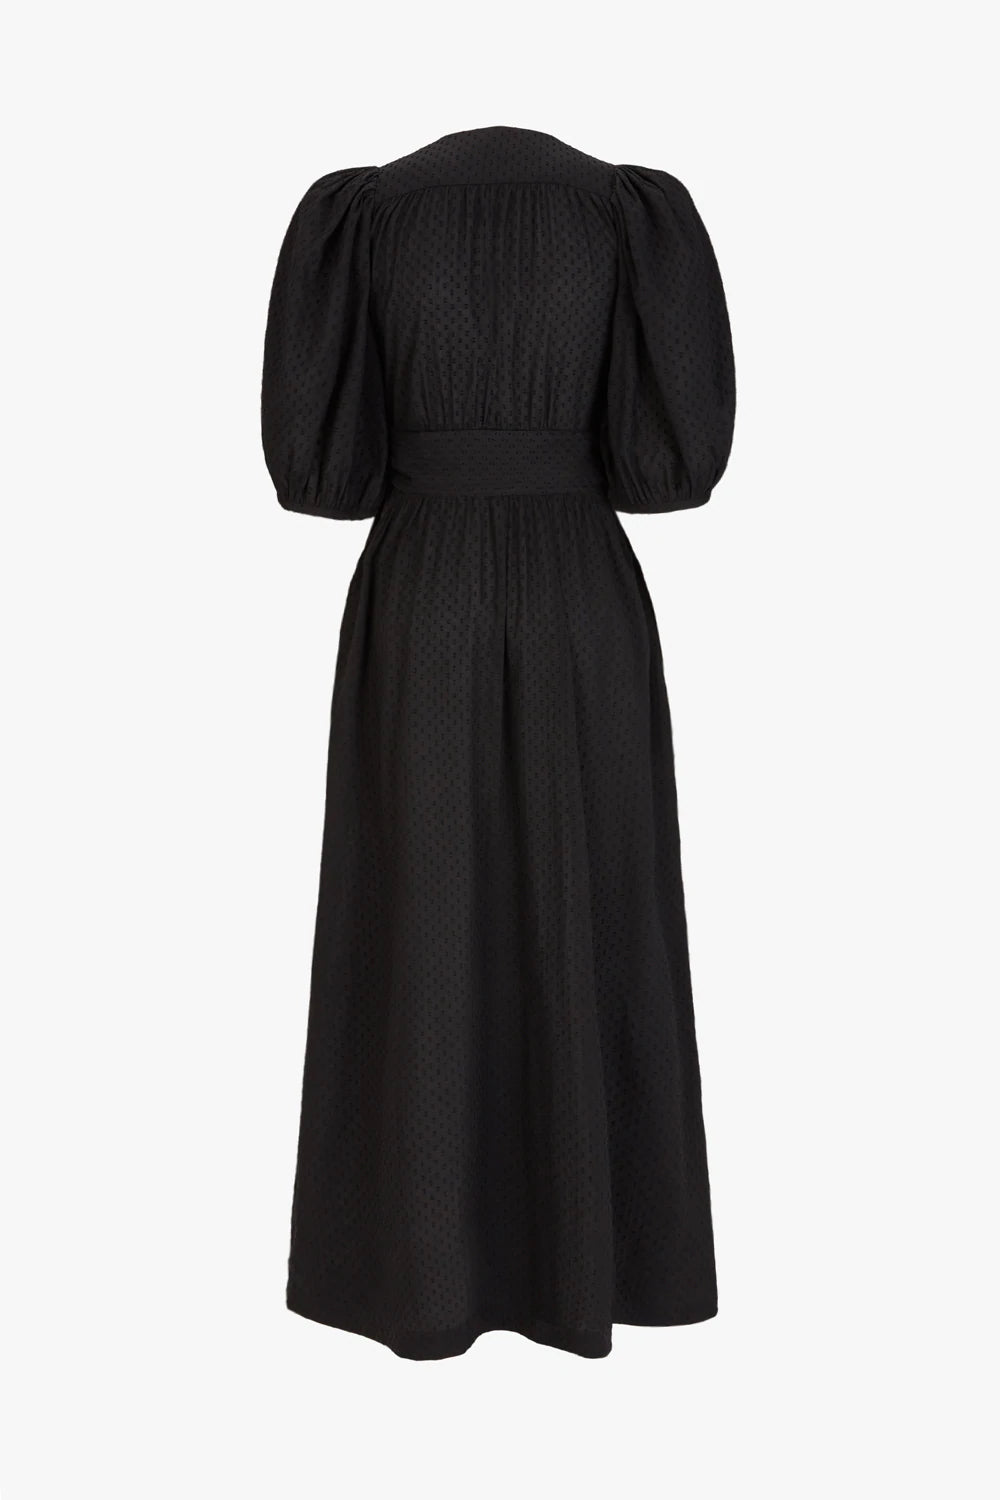 Browyn Dress Black